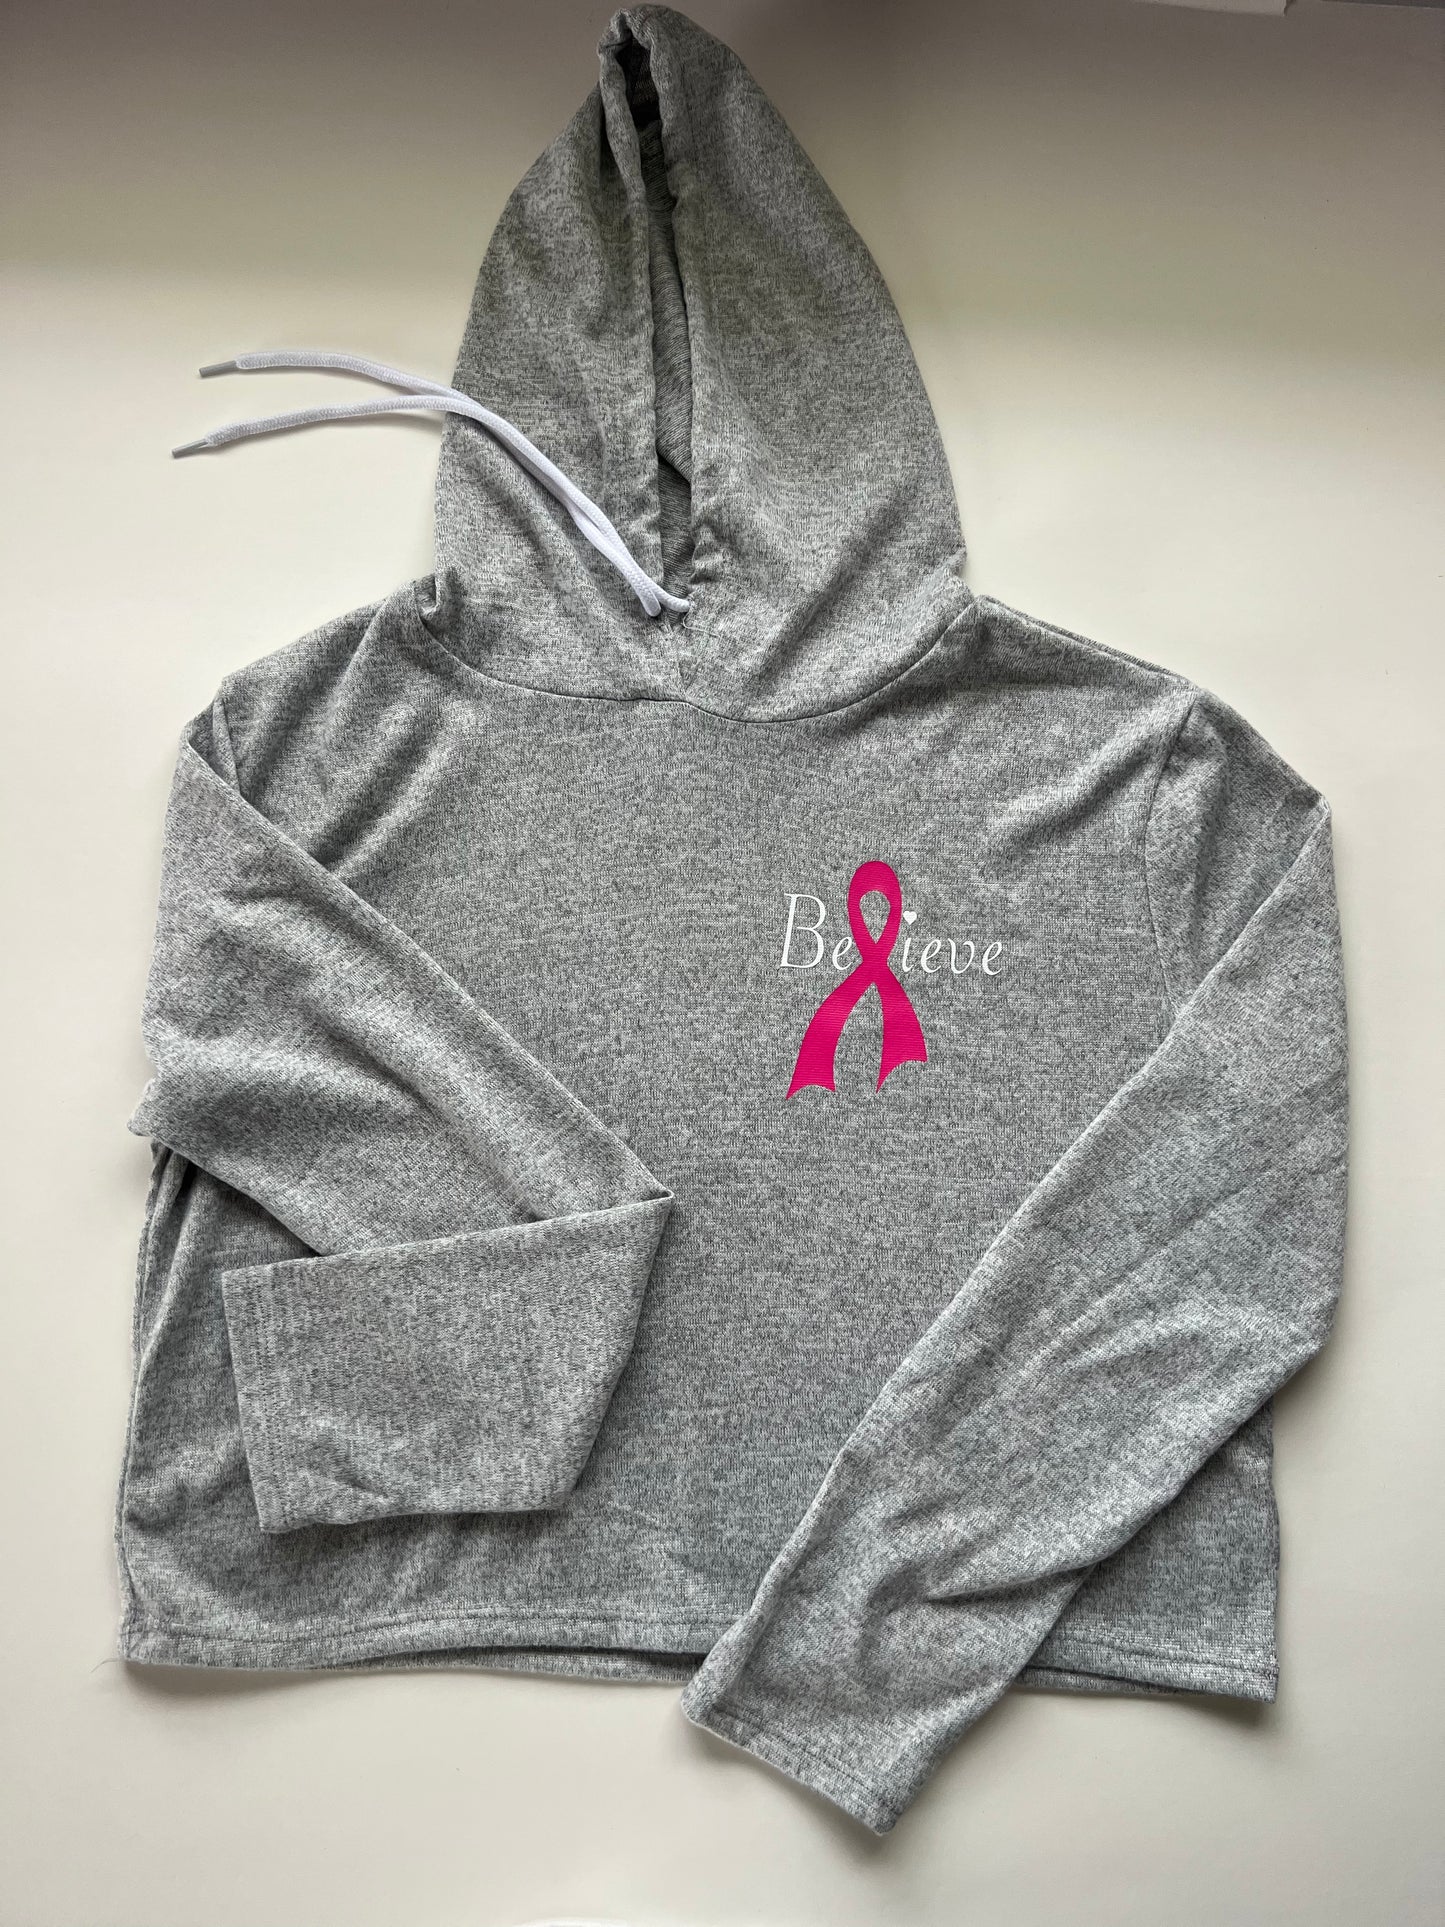 Believe breast cancer long sleeve crop top hoodie